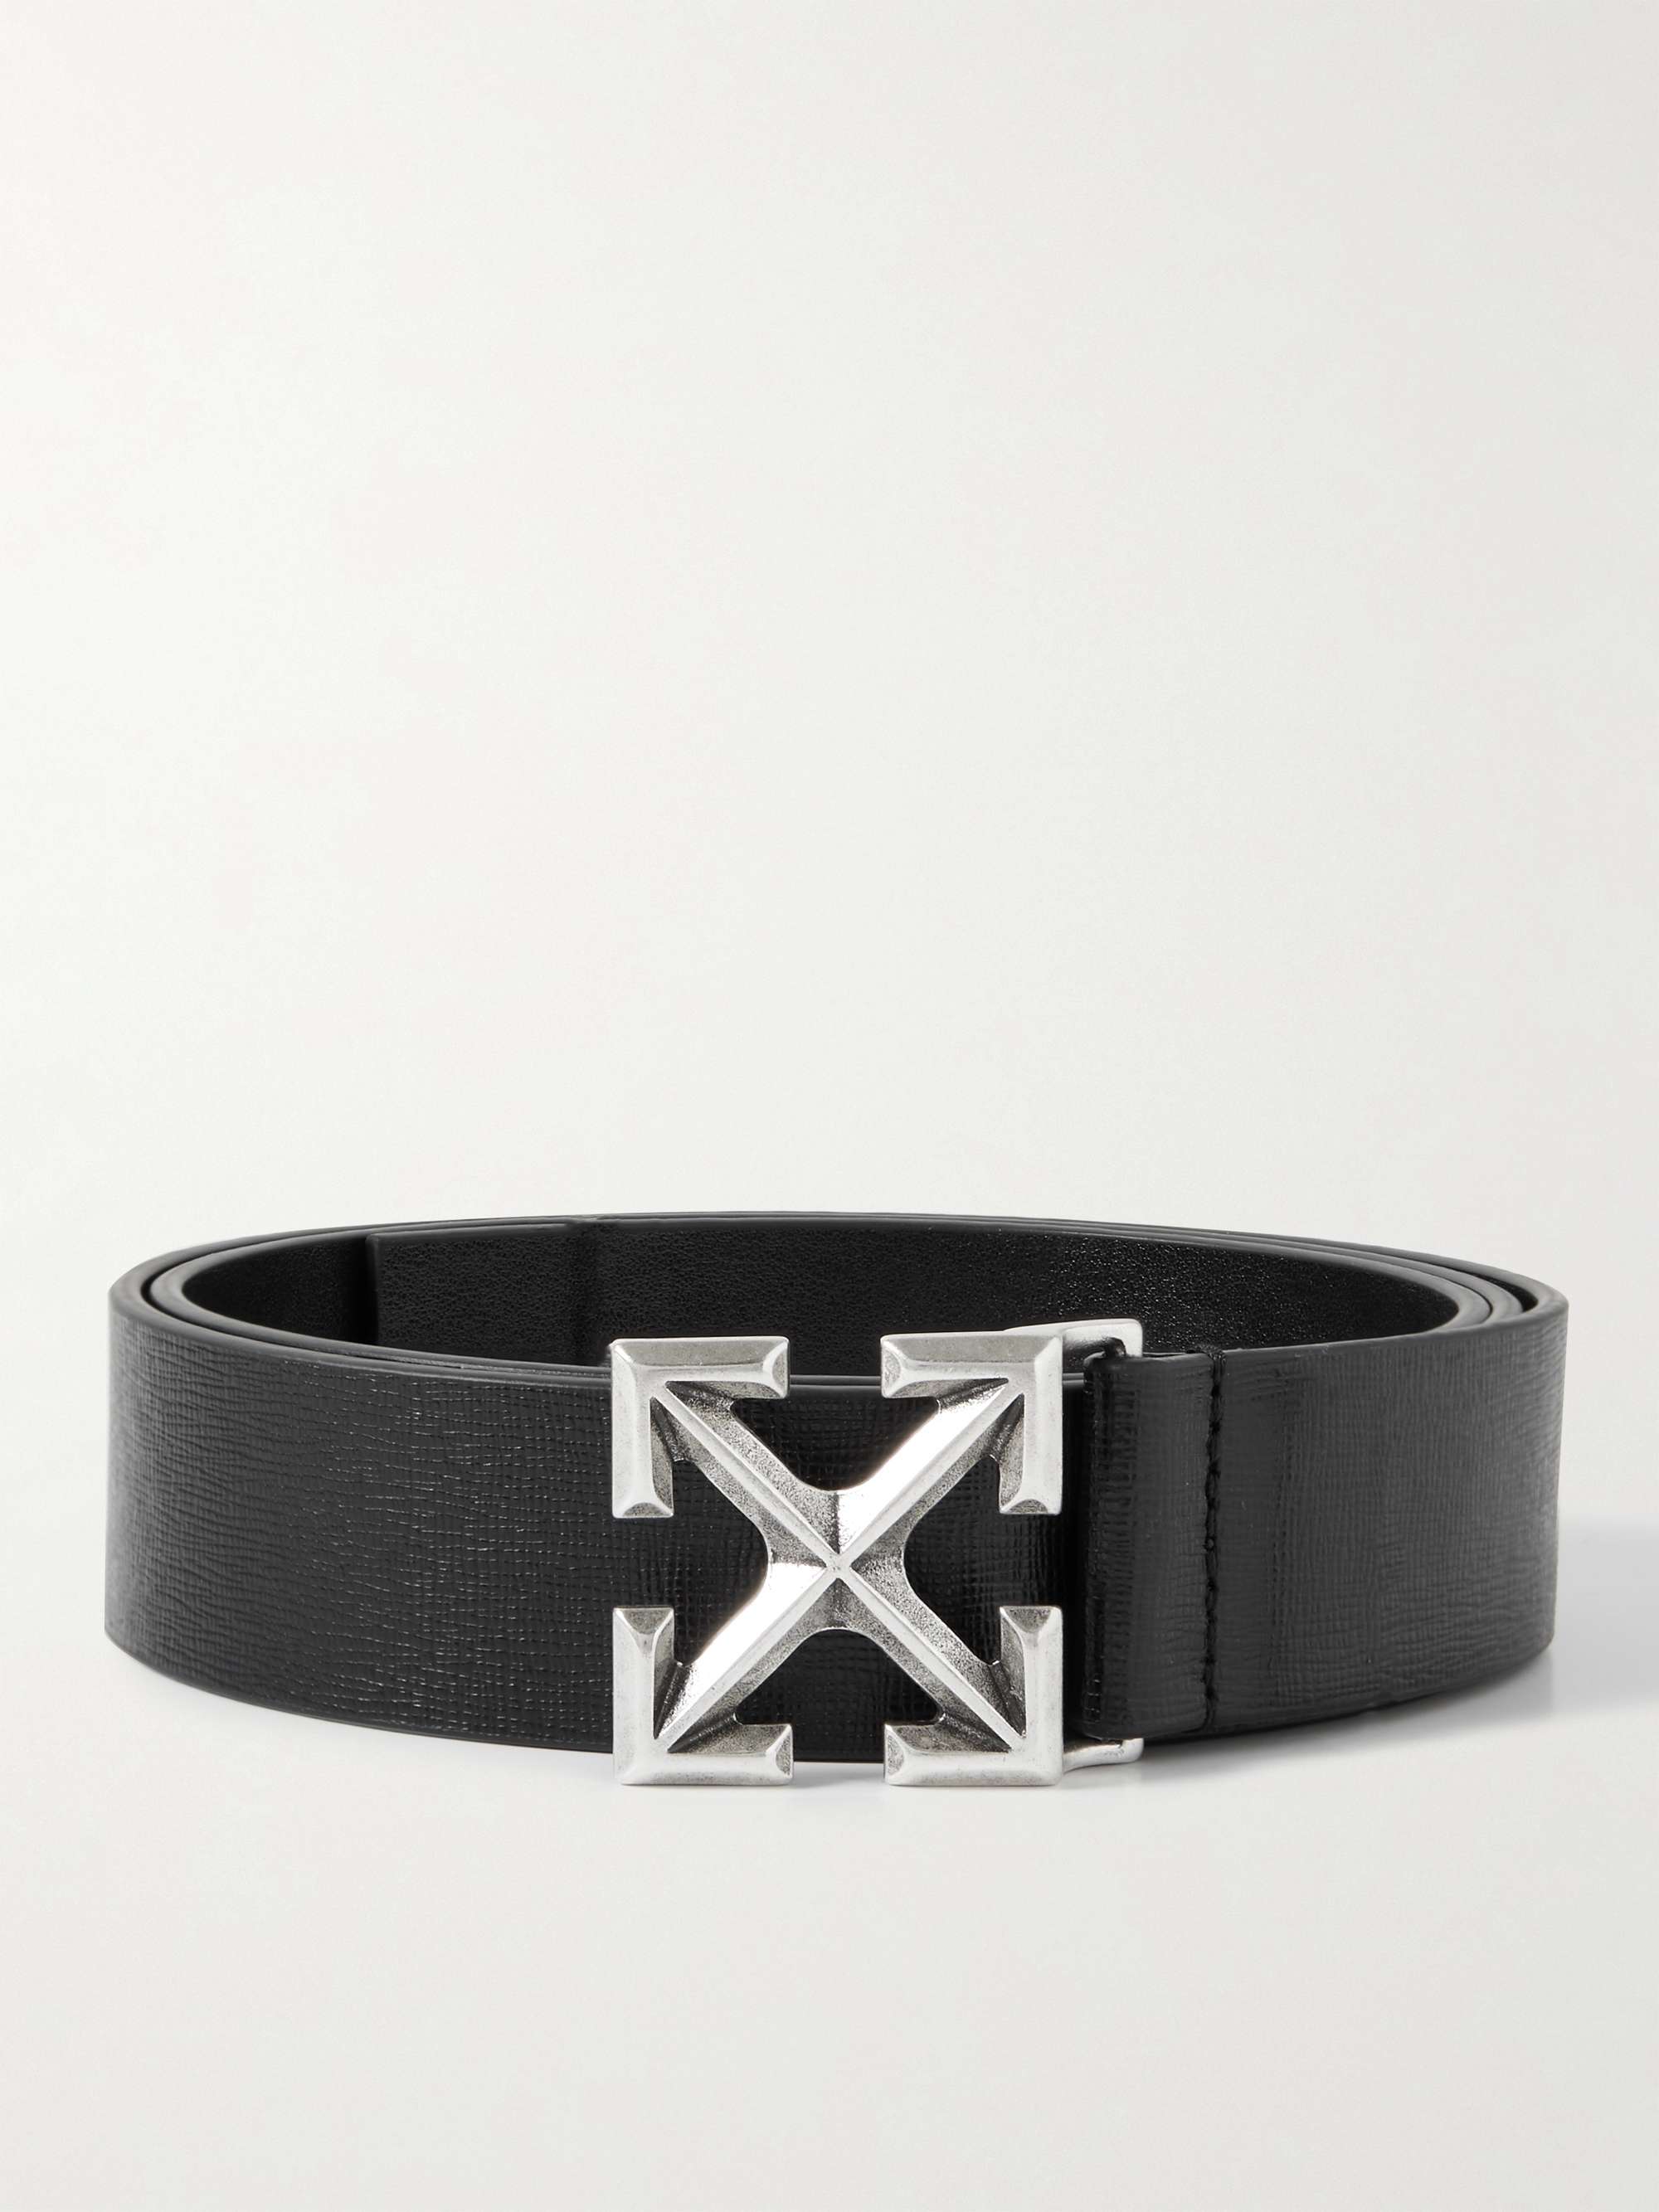 OFF-WHITE 3.5cm Cross-Grain Leather Belt